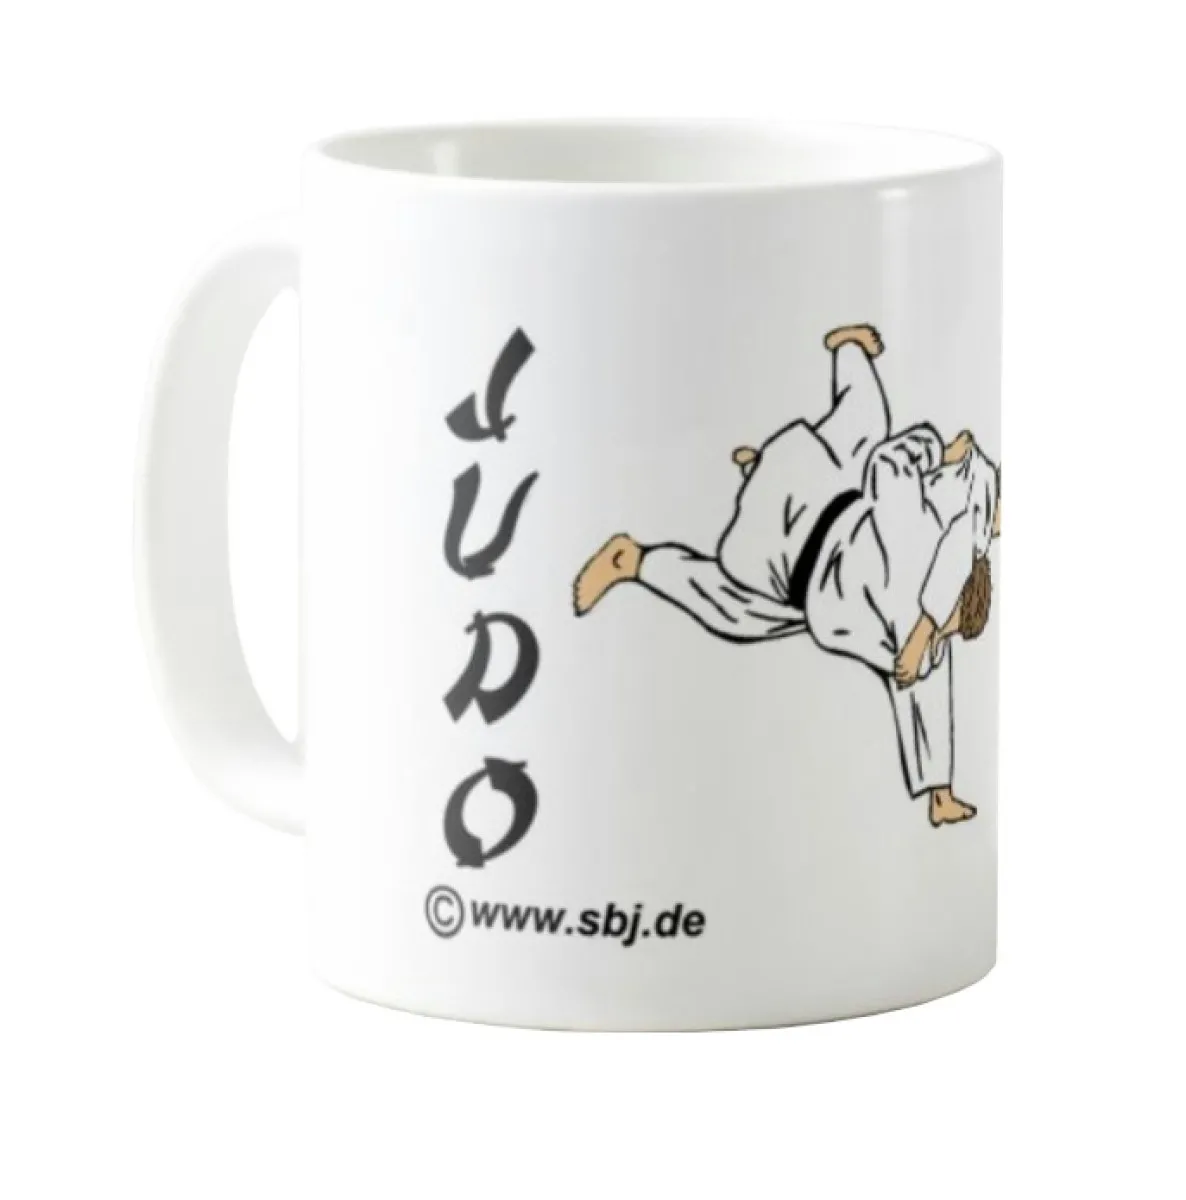 Judo cup